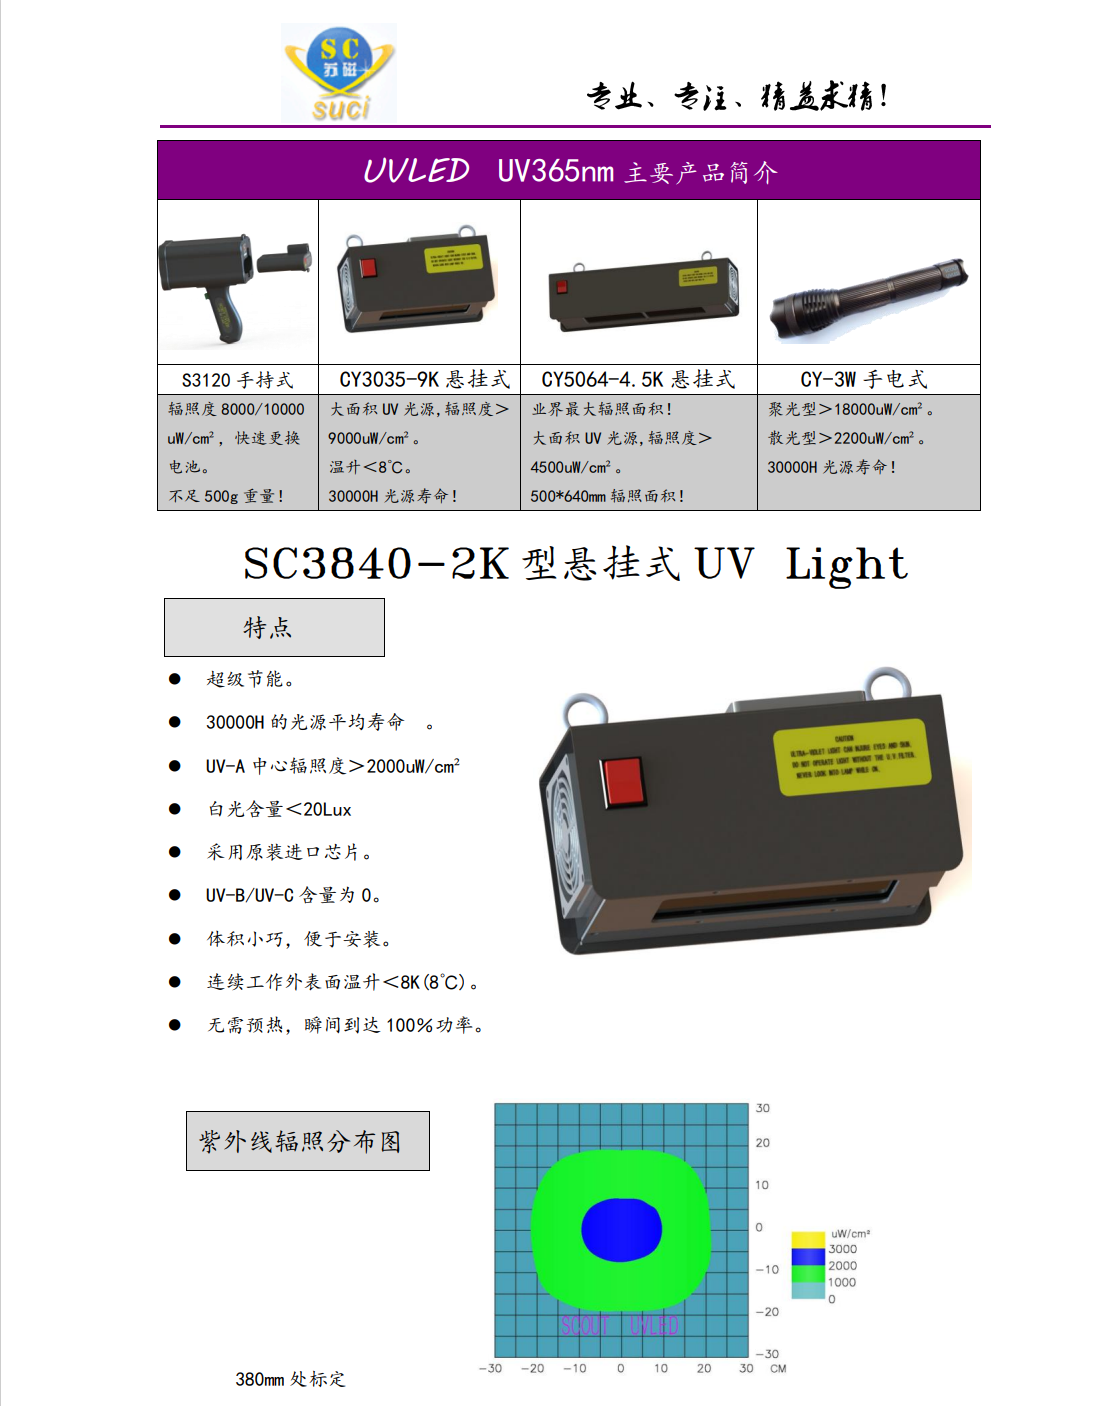 SC3840-2K说明书1.png